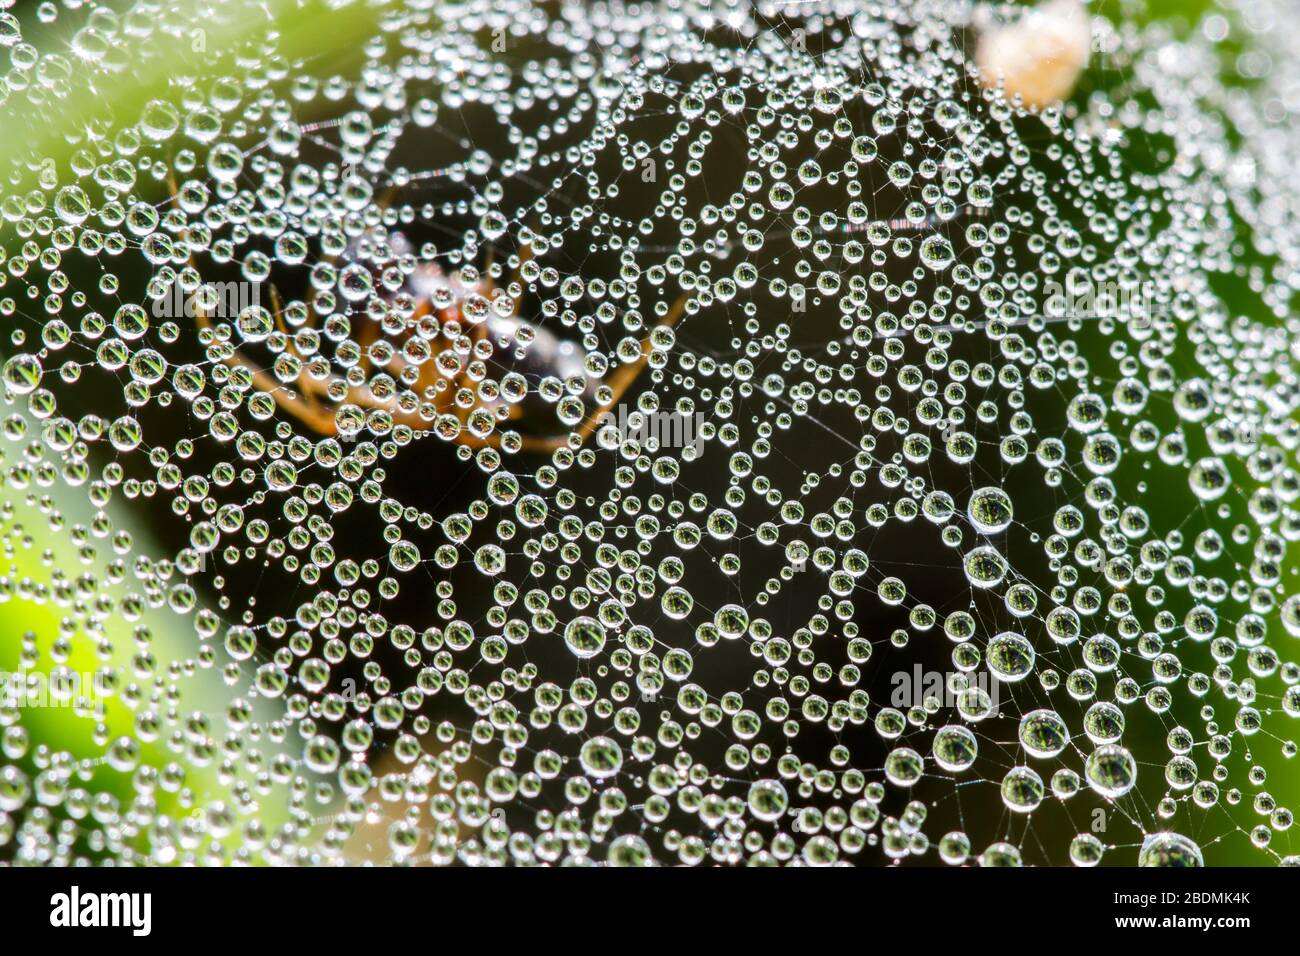 Tautropfen auf einem Spinnenetz Stock Photo